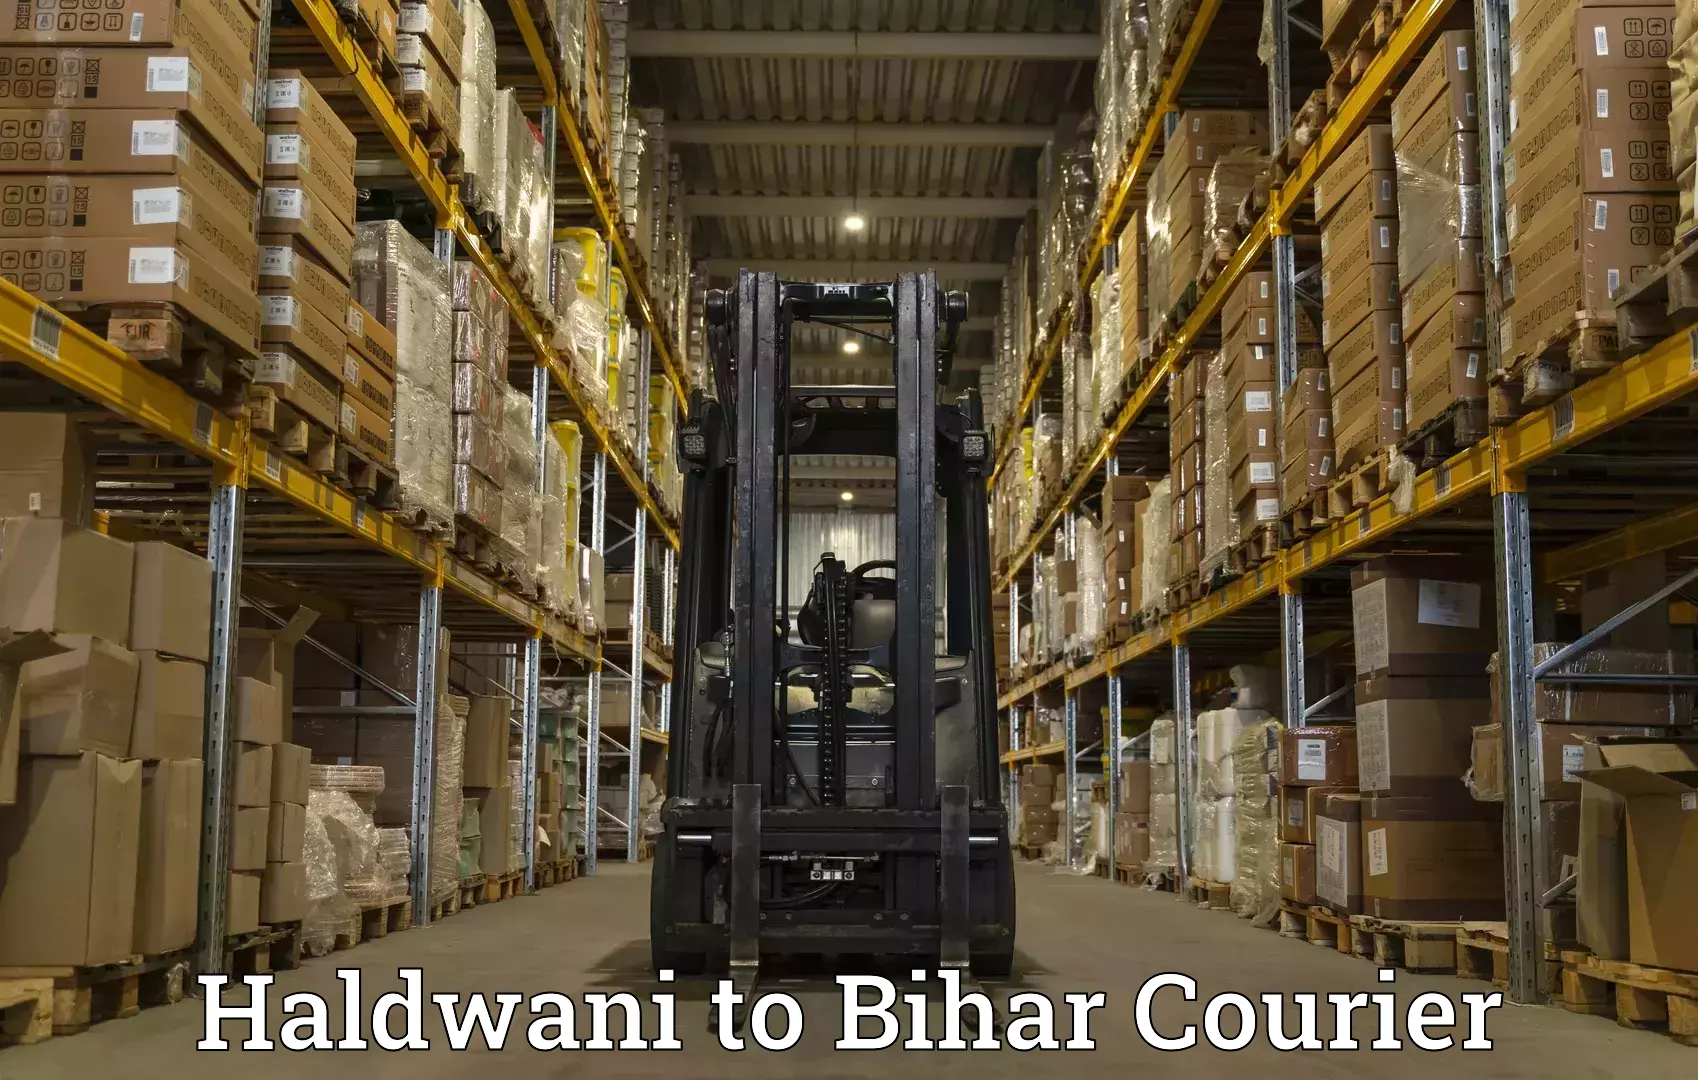 Speedy delivery service Haldwani to Baniapur